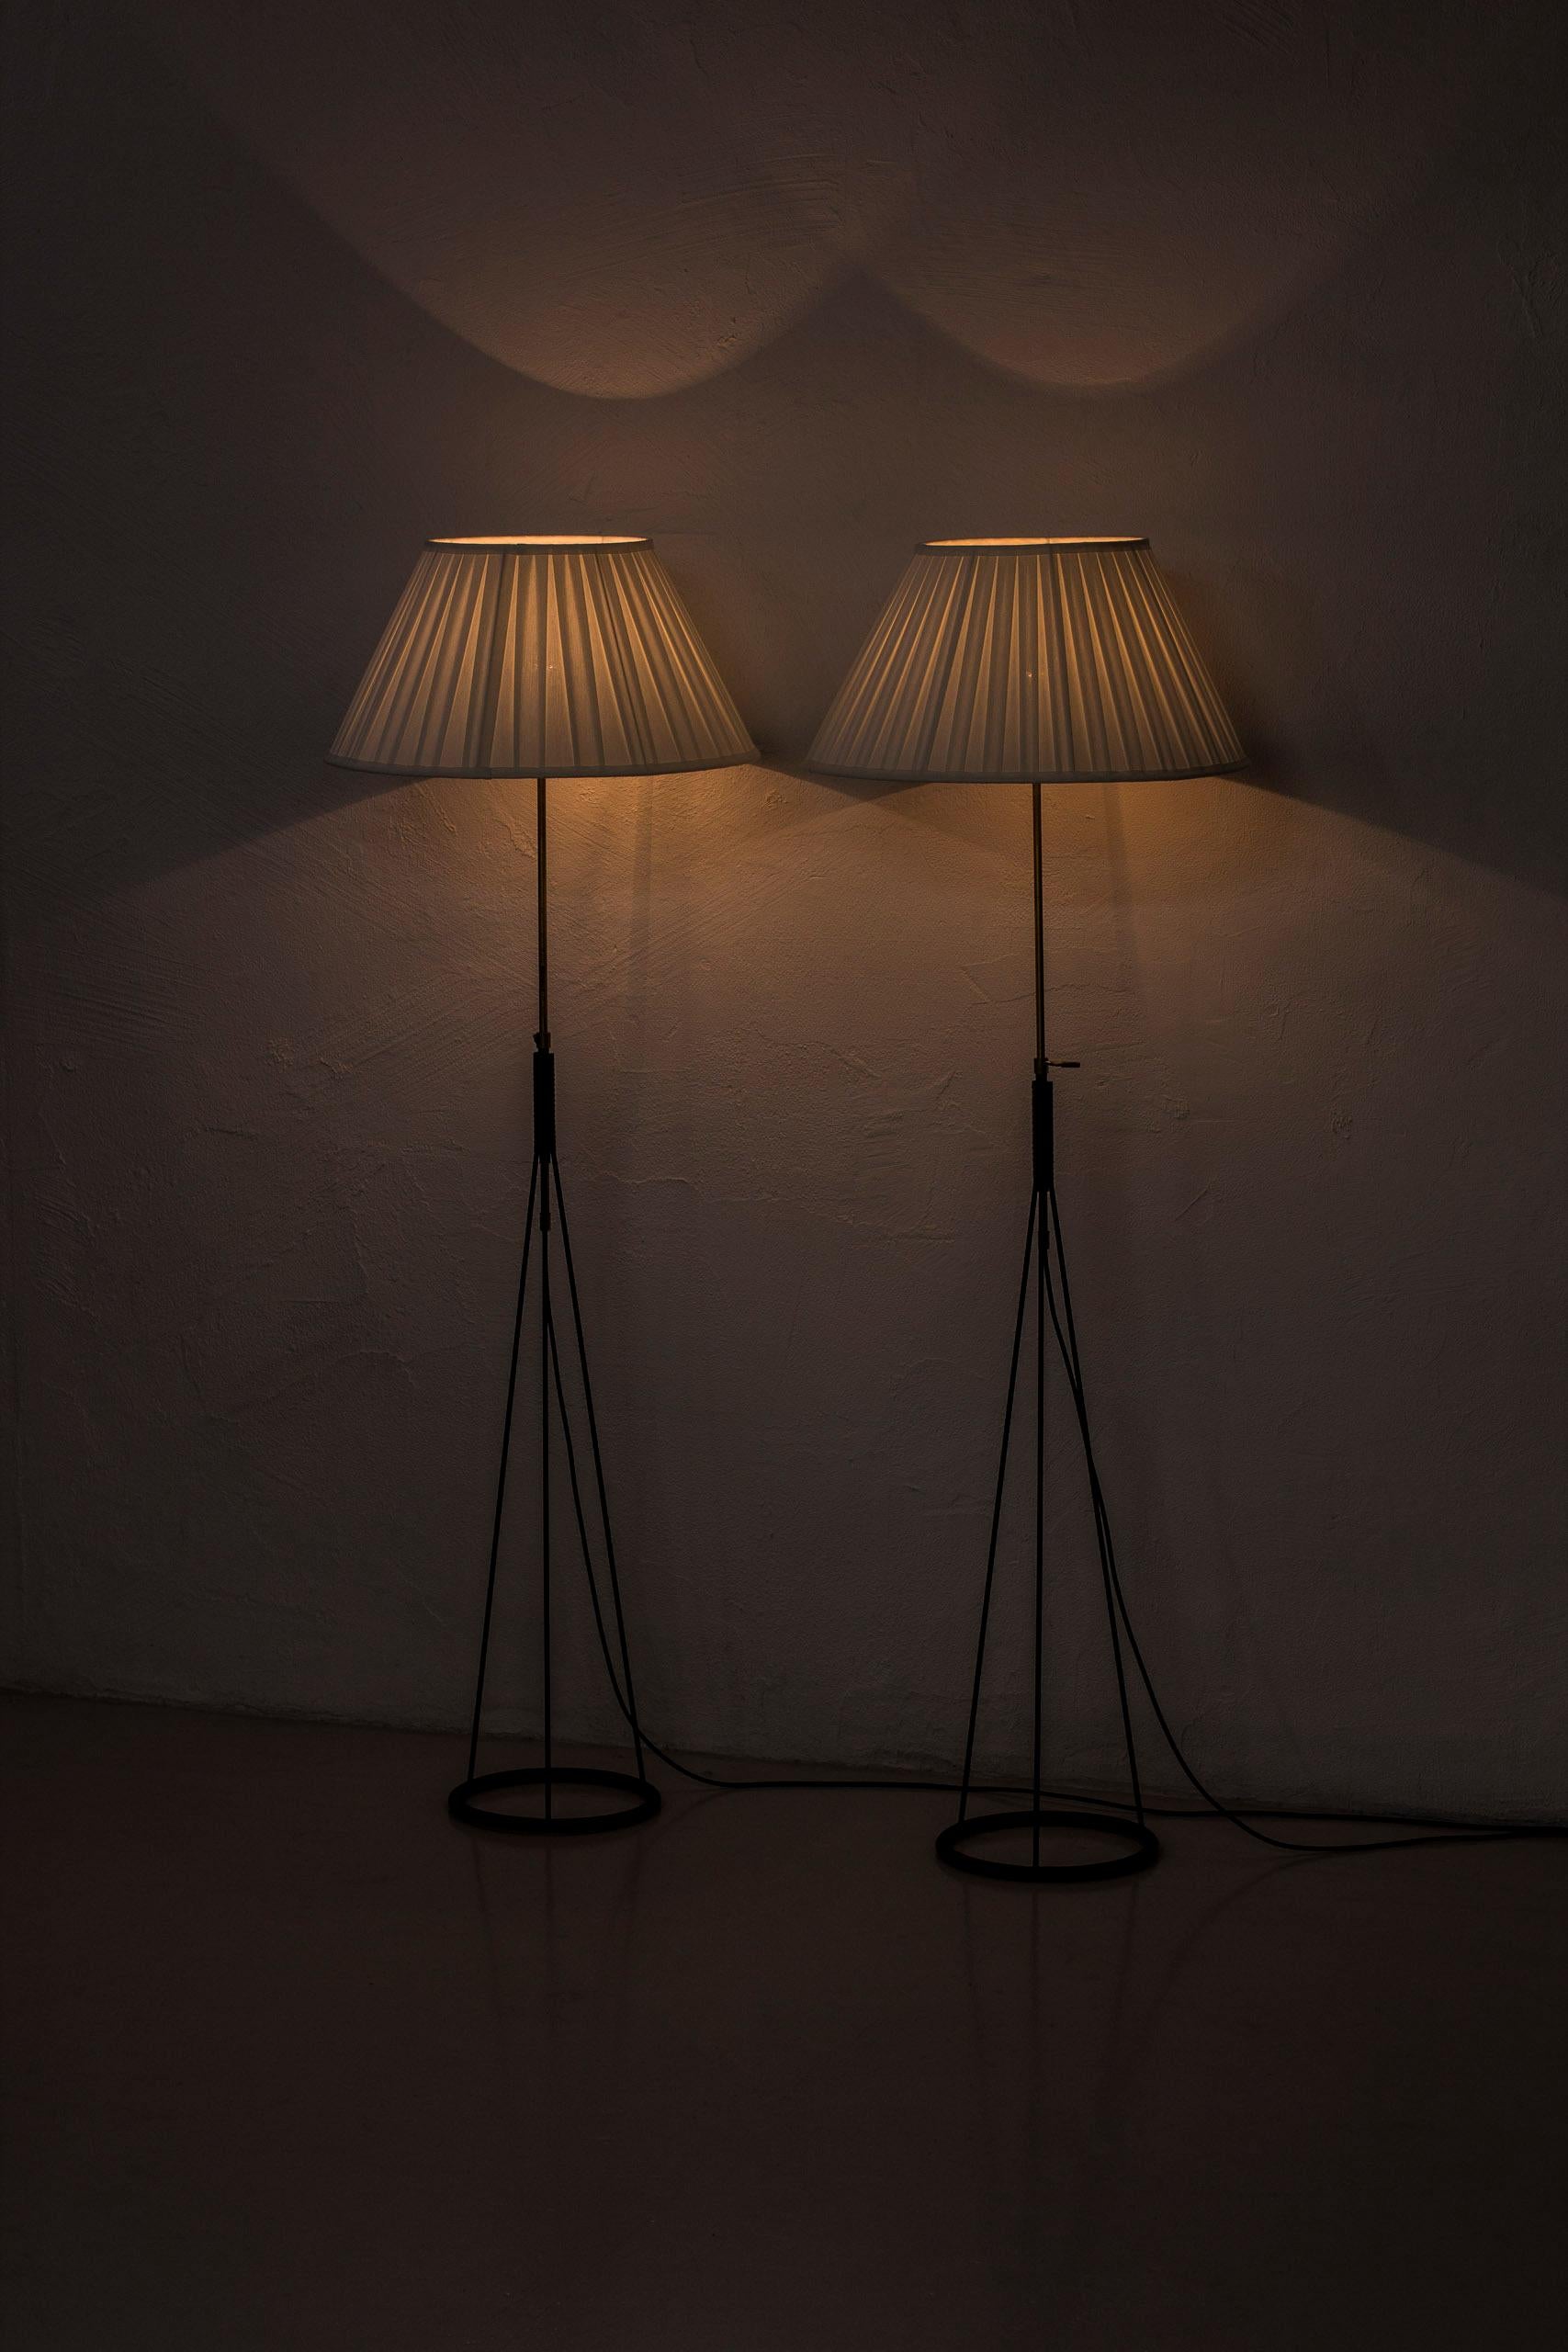 Metal Pair of floor lamps by Eje Ahlgren for Luco, Sweden, 1950s